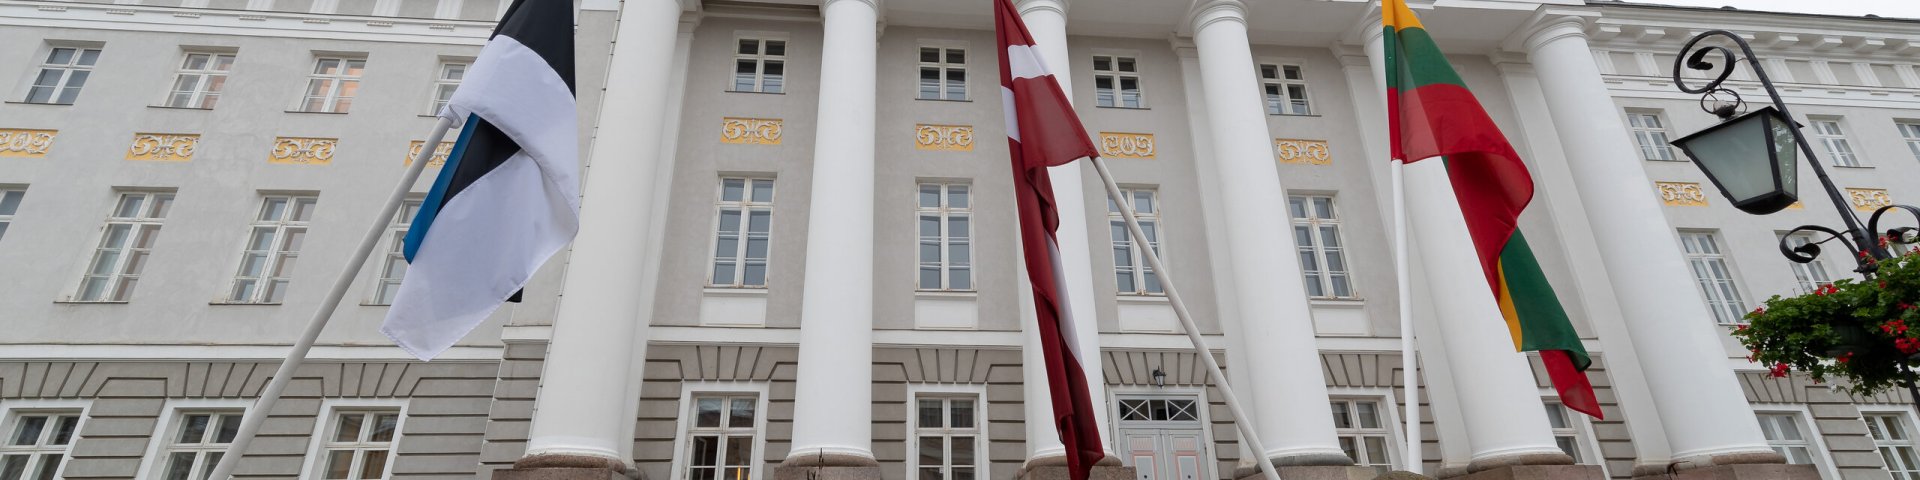 Eesti, Läti ja Leedu lipp ülikooli peahoone ees